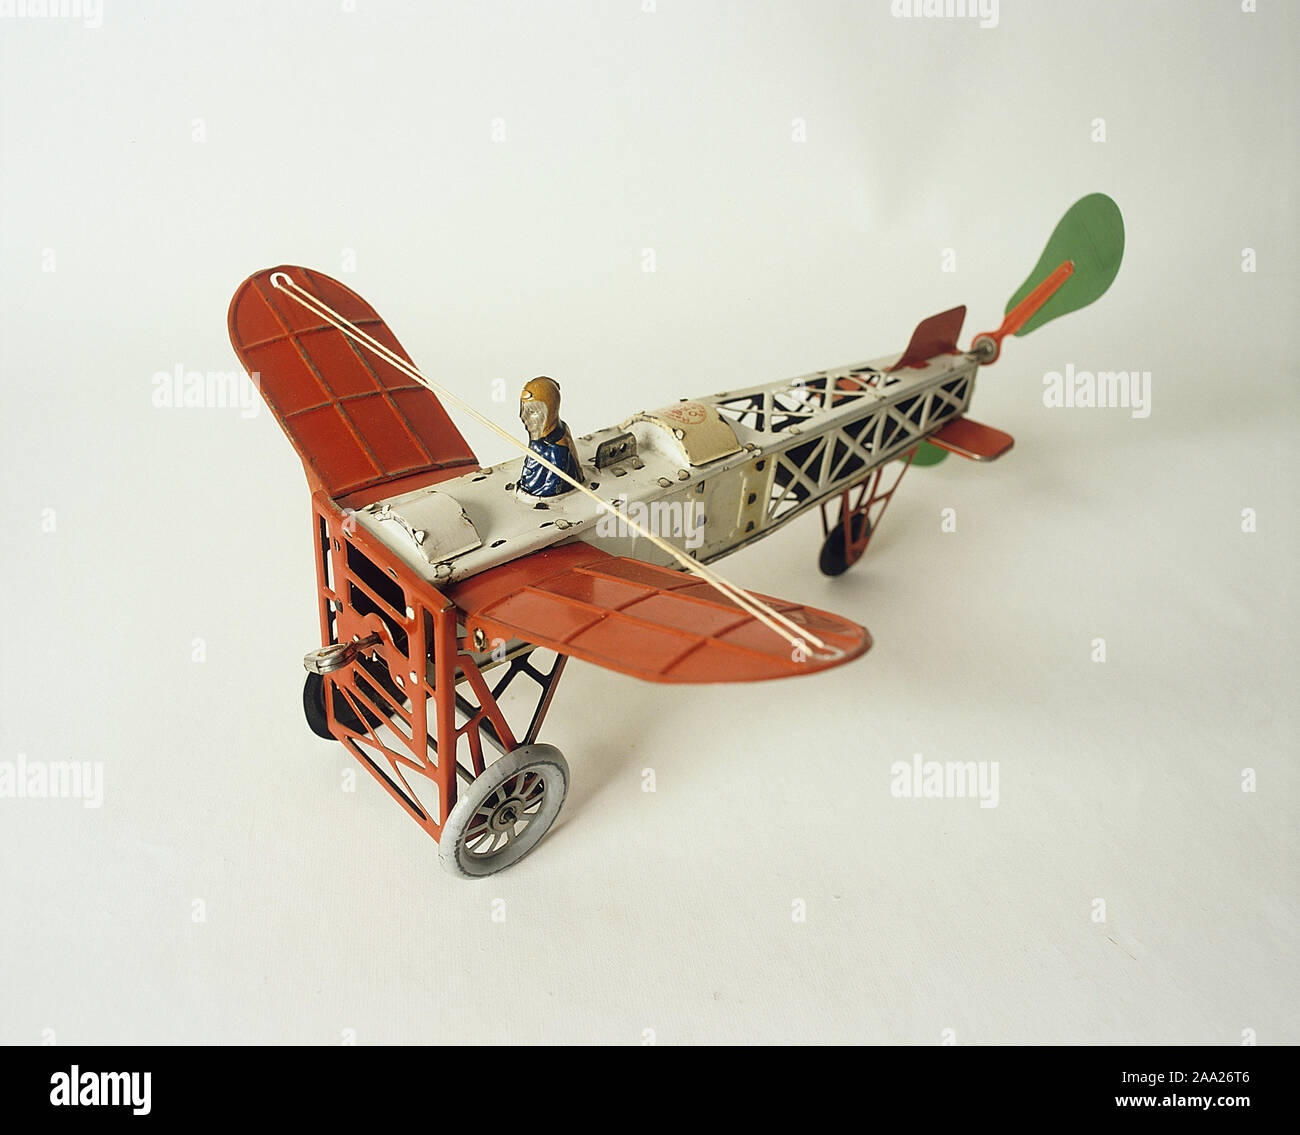 Spielwaren der Kinder aus der Vergangenheit. Tin Toy Flugzeug, das populär war um die Jahrhundertwende 1800-1900. Einfache aber lustige Spielsachen, billig zu kaufen. Sie sind jetzt sammelbar und sehr wertvoll sein können. Deutsche Spielzeughersteller dominiert die Produktion von frühen Spielzeug. Stockfoto